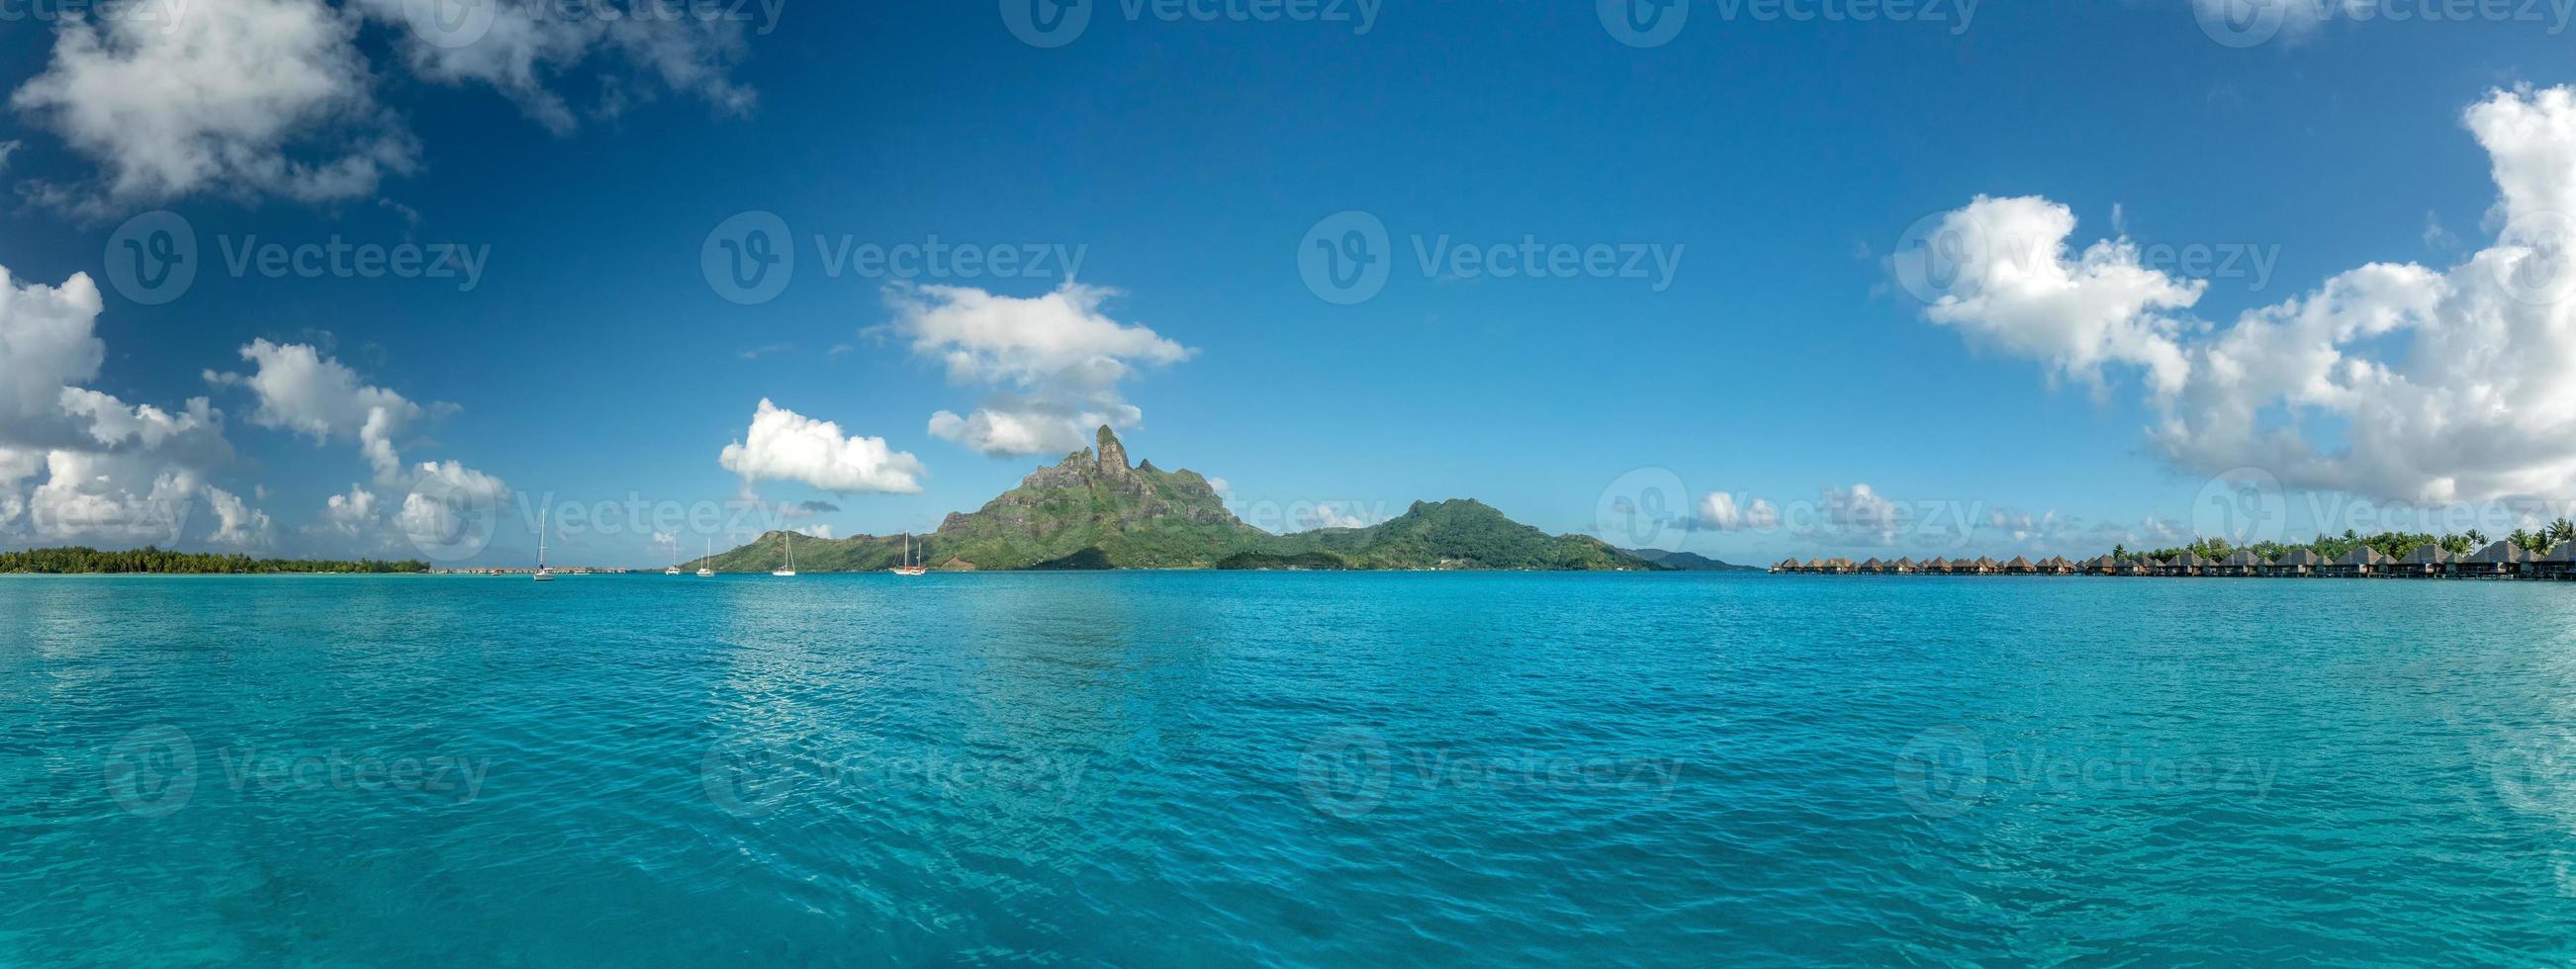 bora bora franska polynesien blå lagun turkos kristall vatten foto